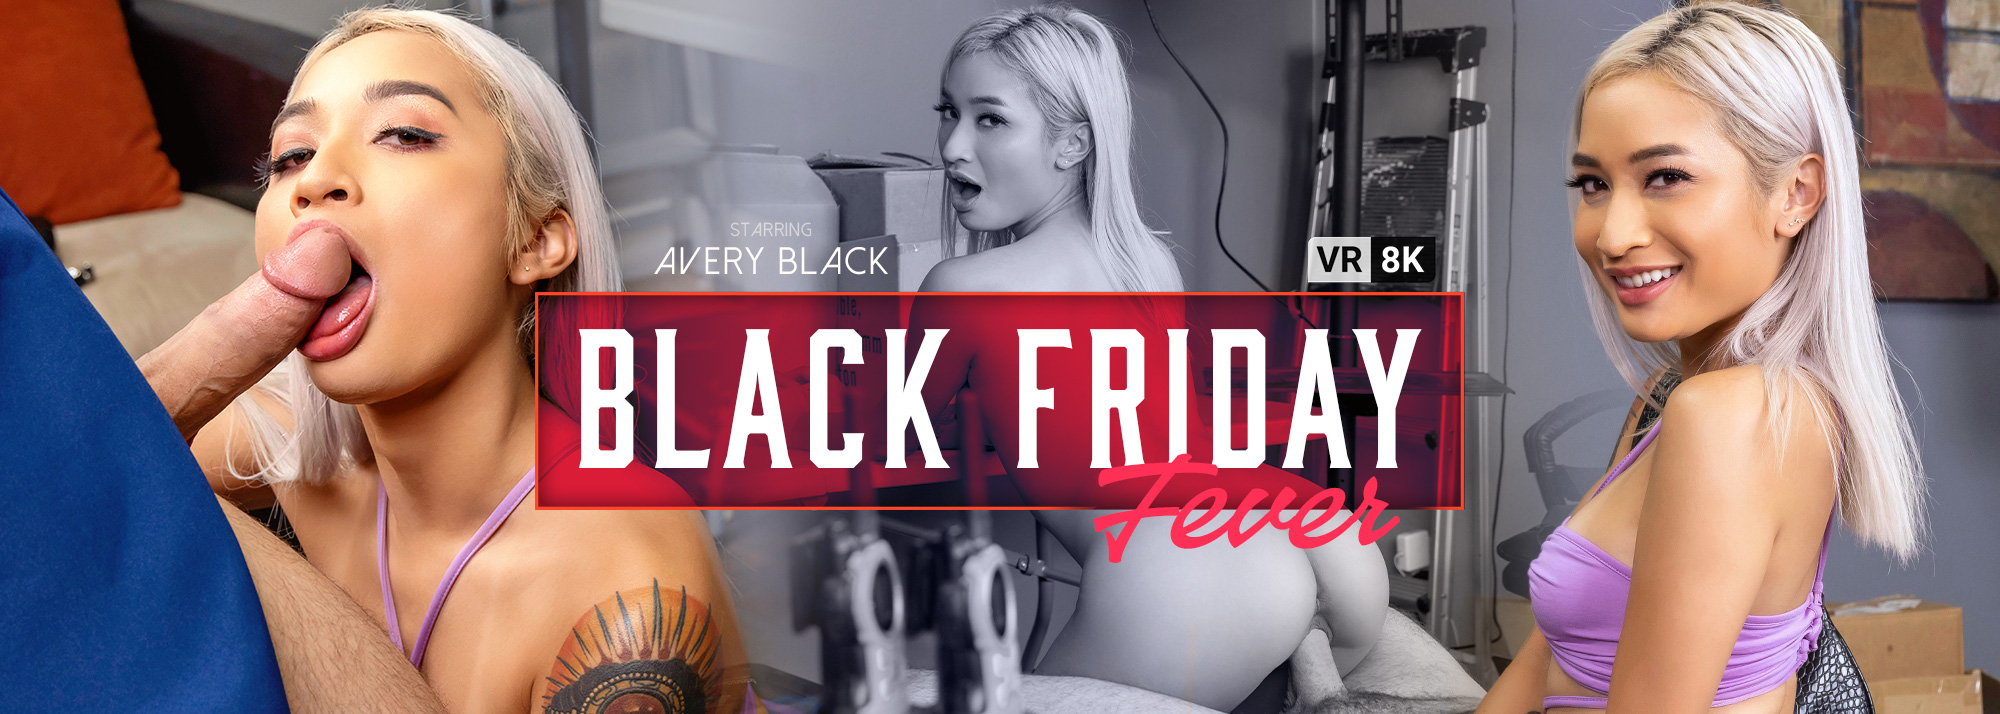 Black Friday Fever - VR Porn Video, Starring: Avery Black